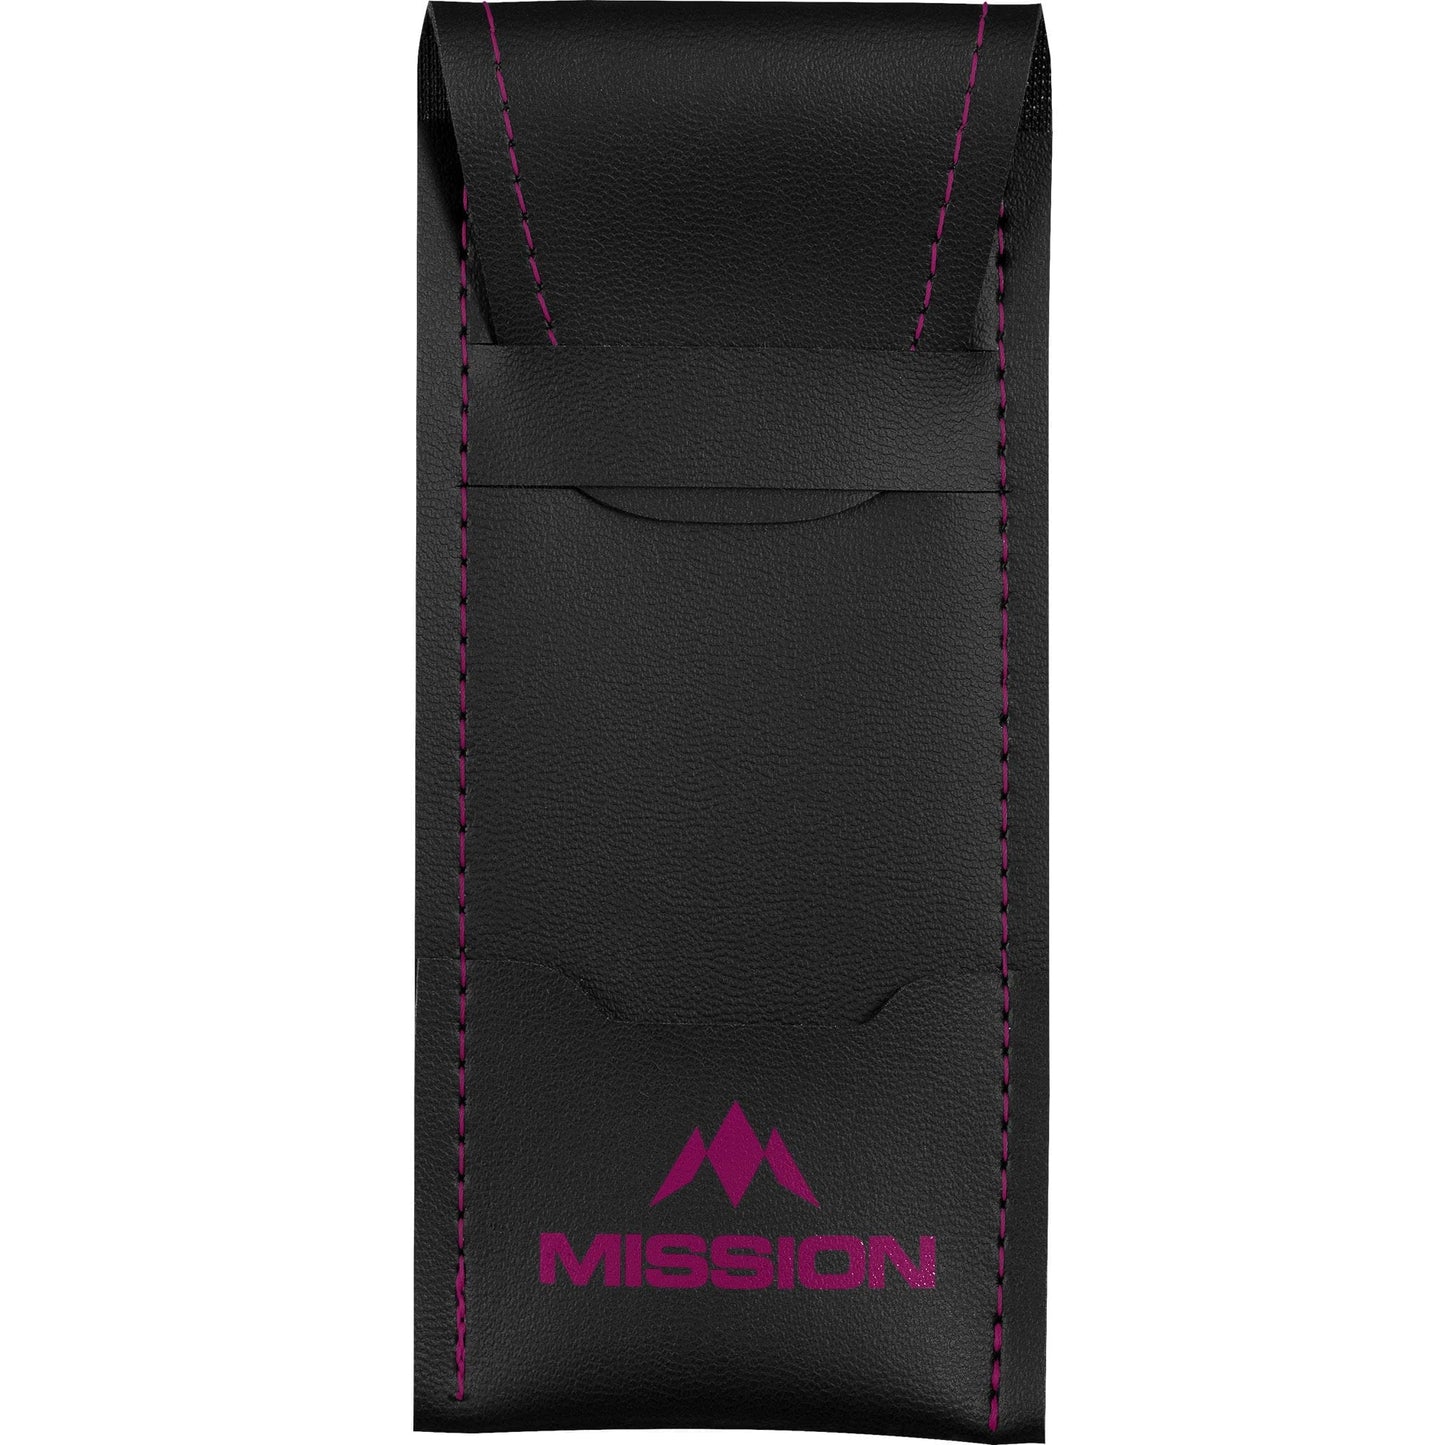 Mission Sport 8 Darts Case - Black Bar Wallet with Trim Pink